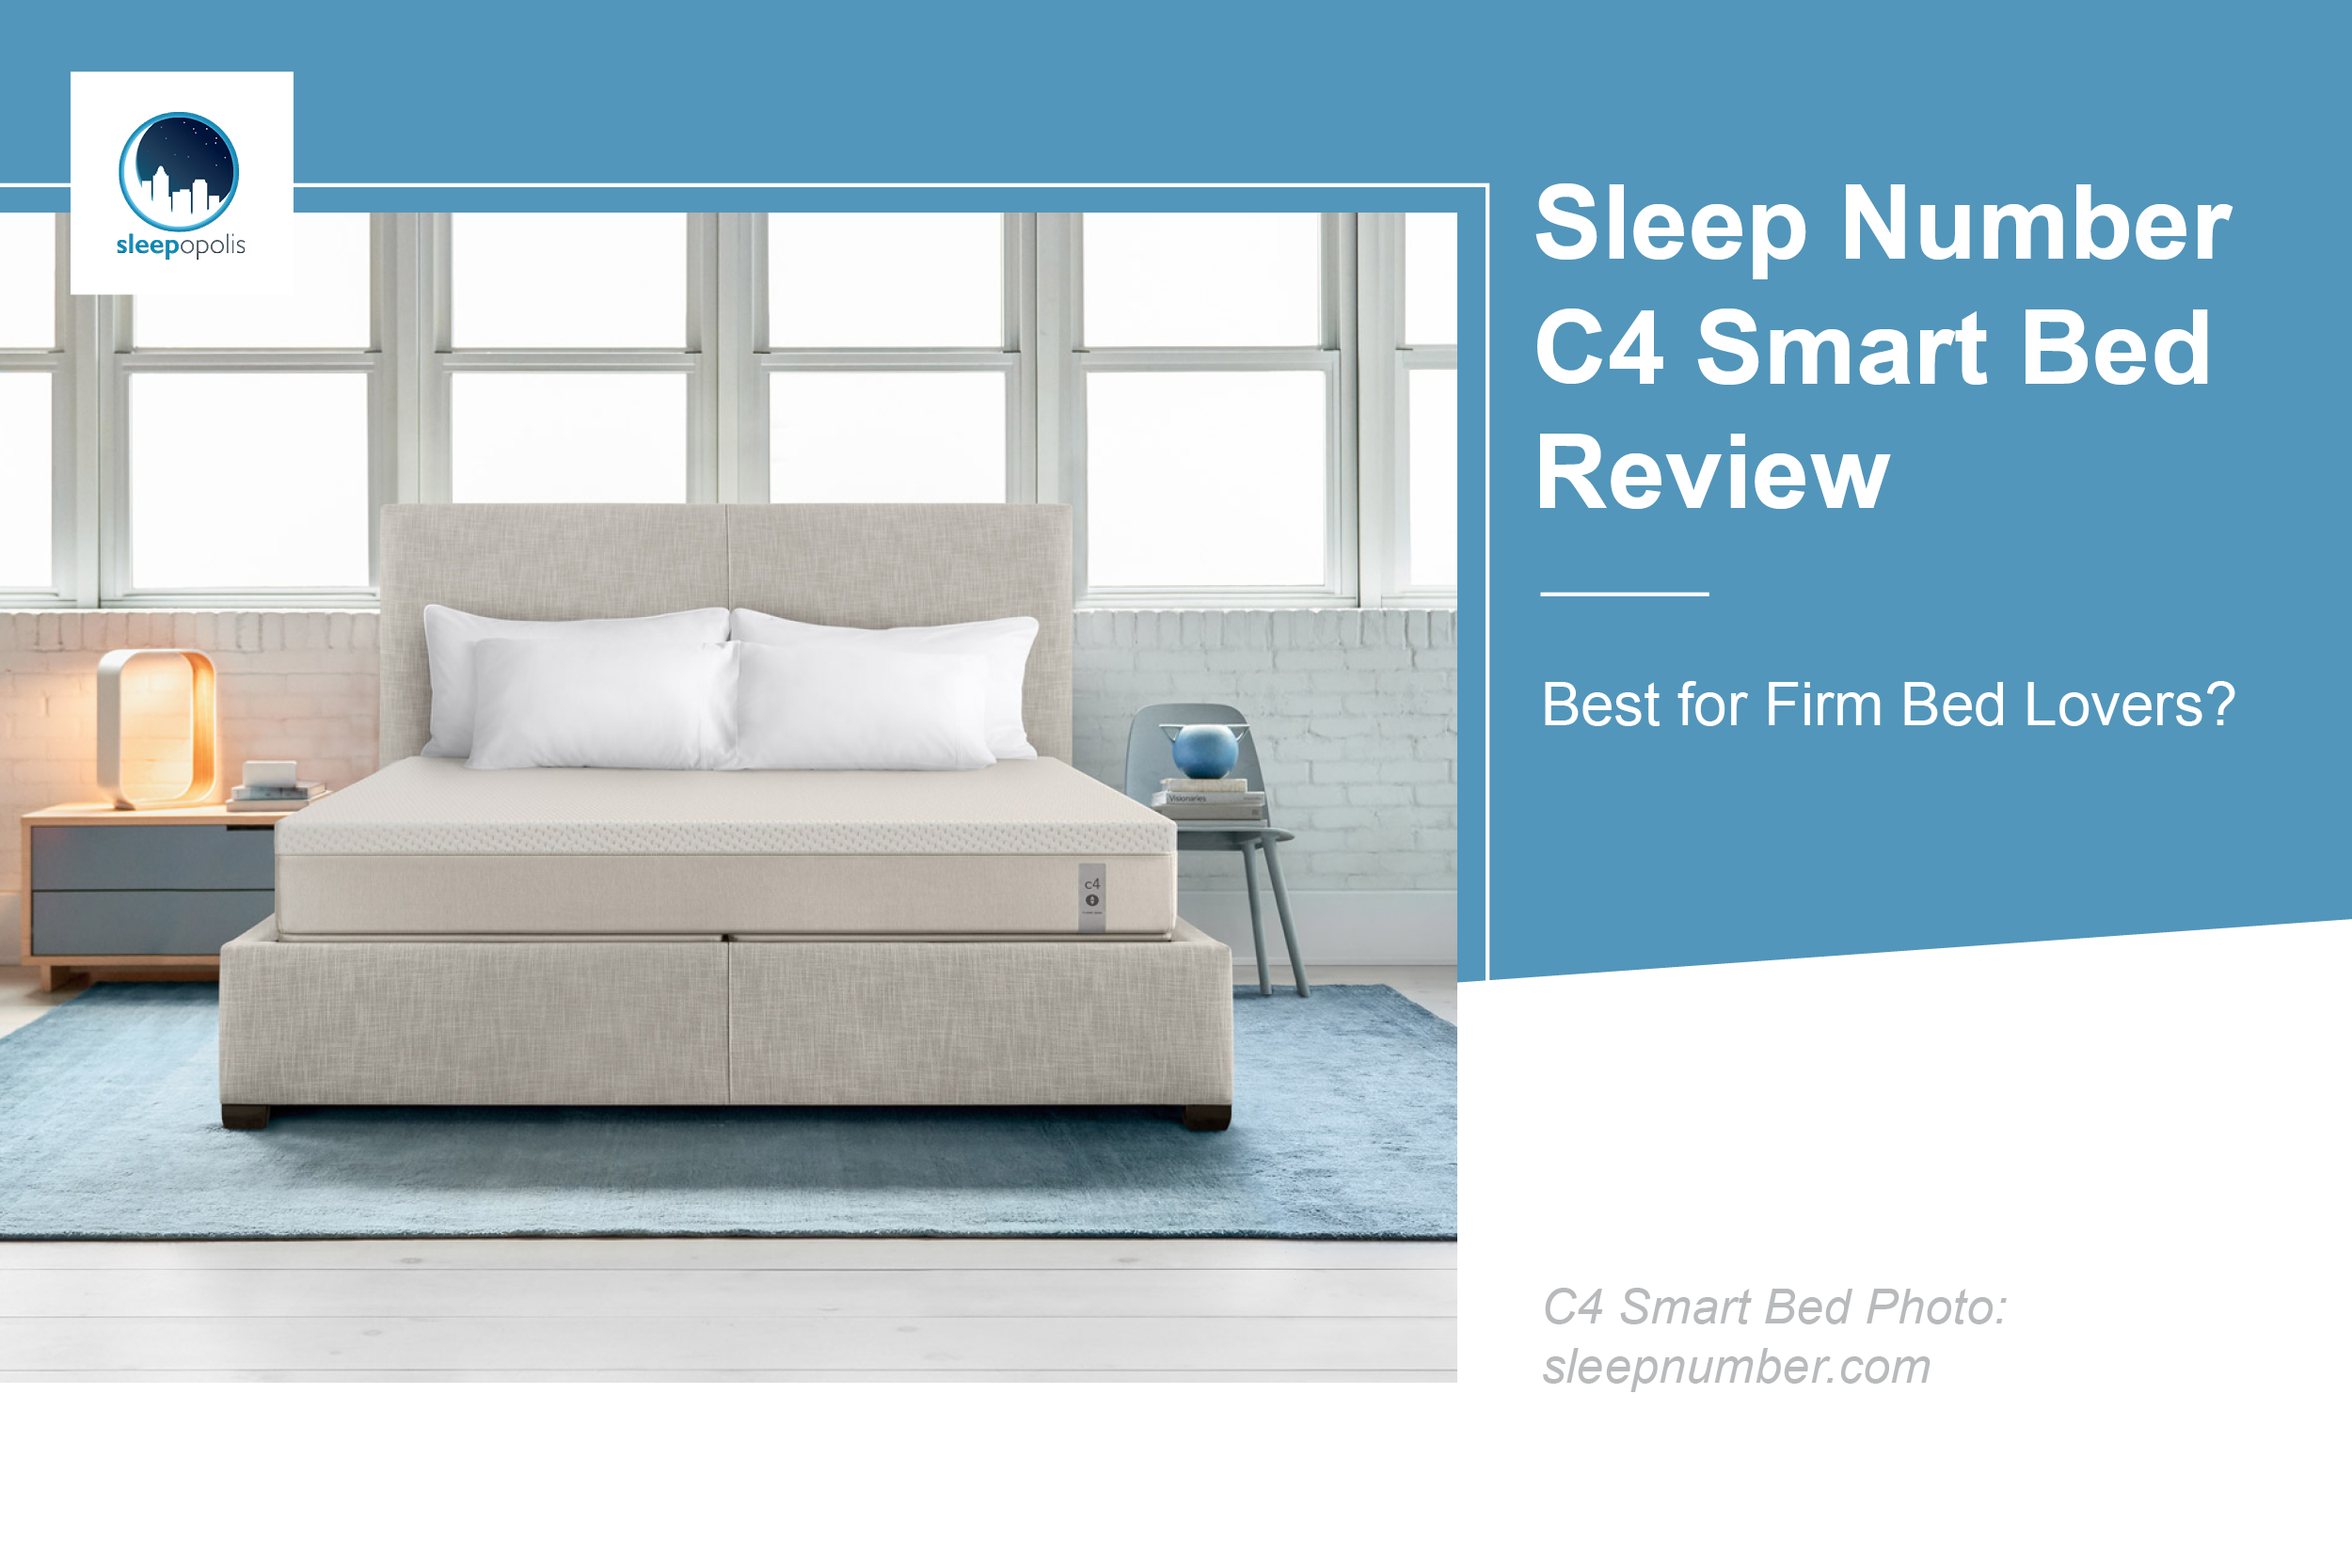 Sleep Number 360 C4 Smart Bed Review, Sleep Number Adjustable Queen Bed